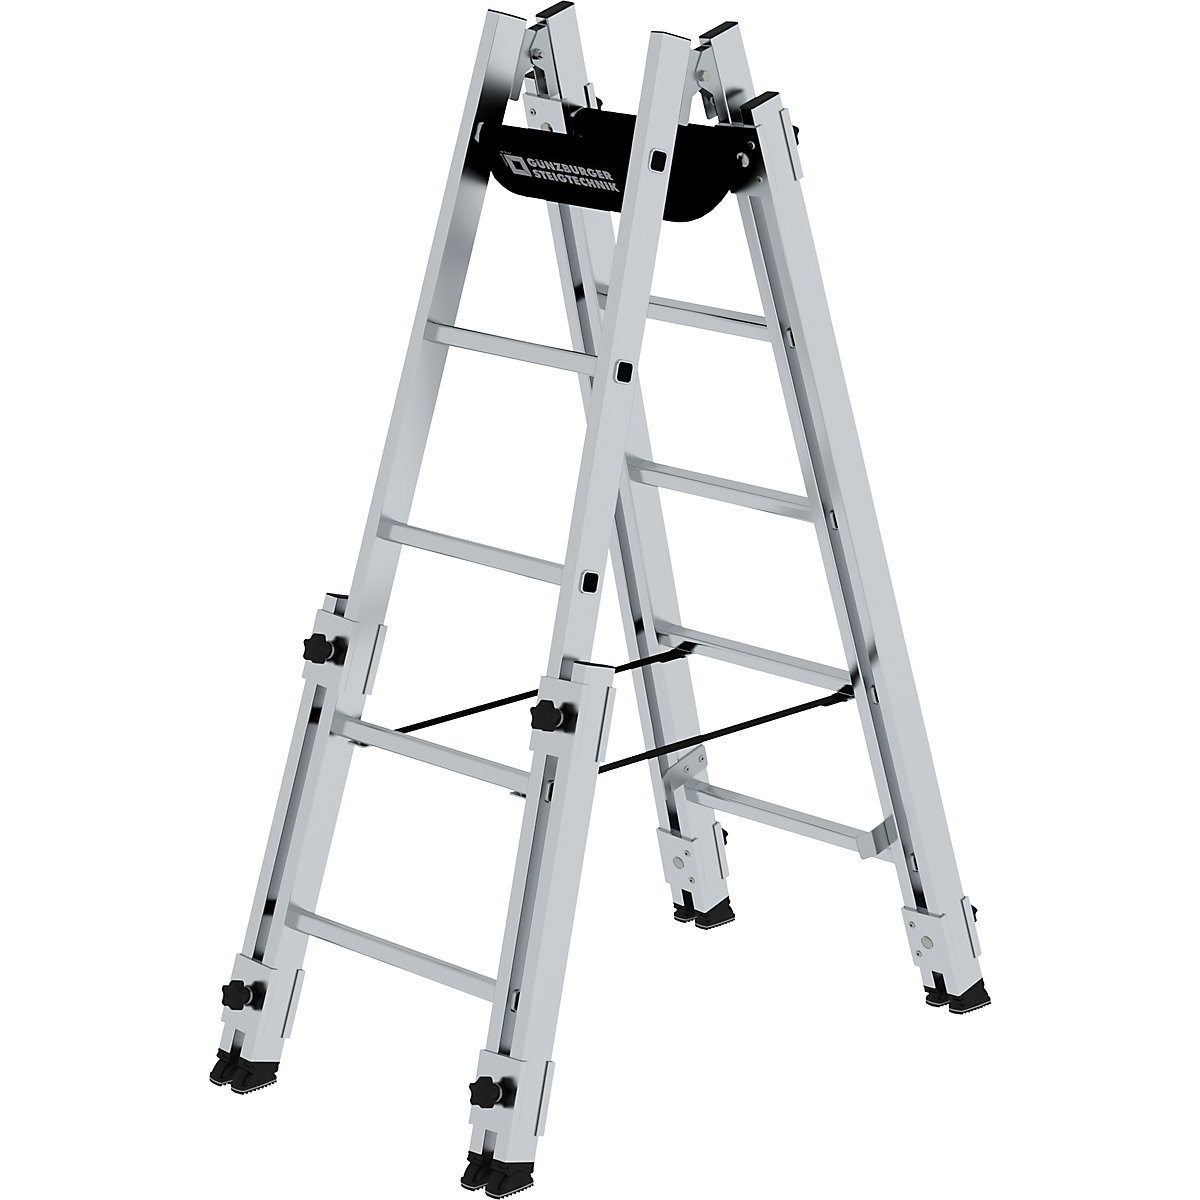 Aluminium rung ladder - MUNK